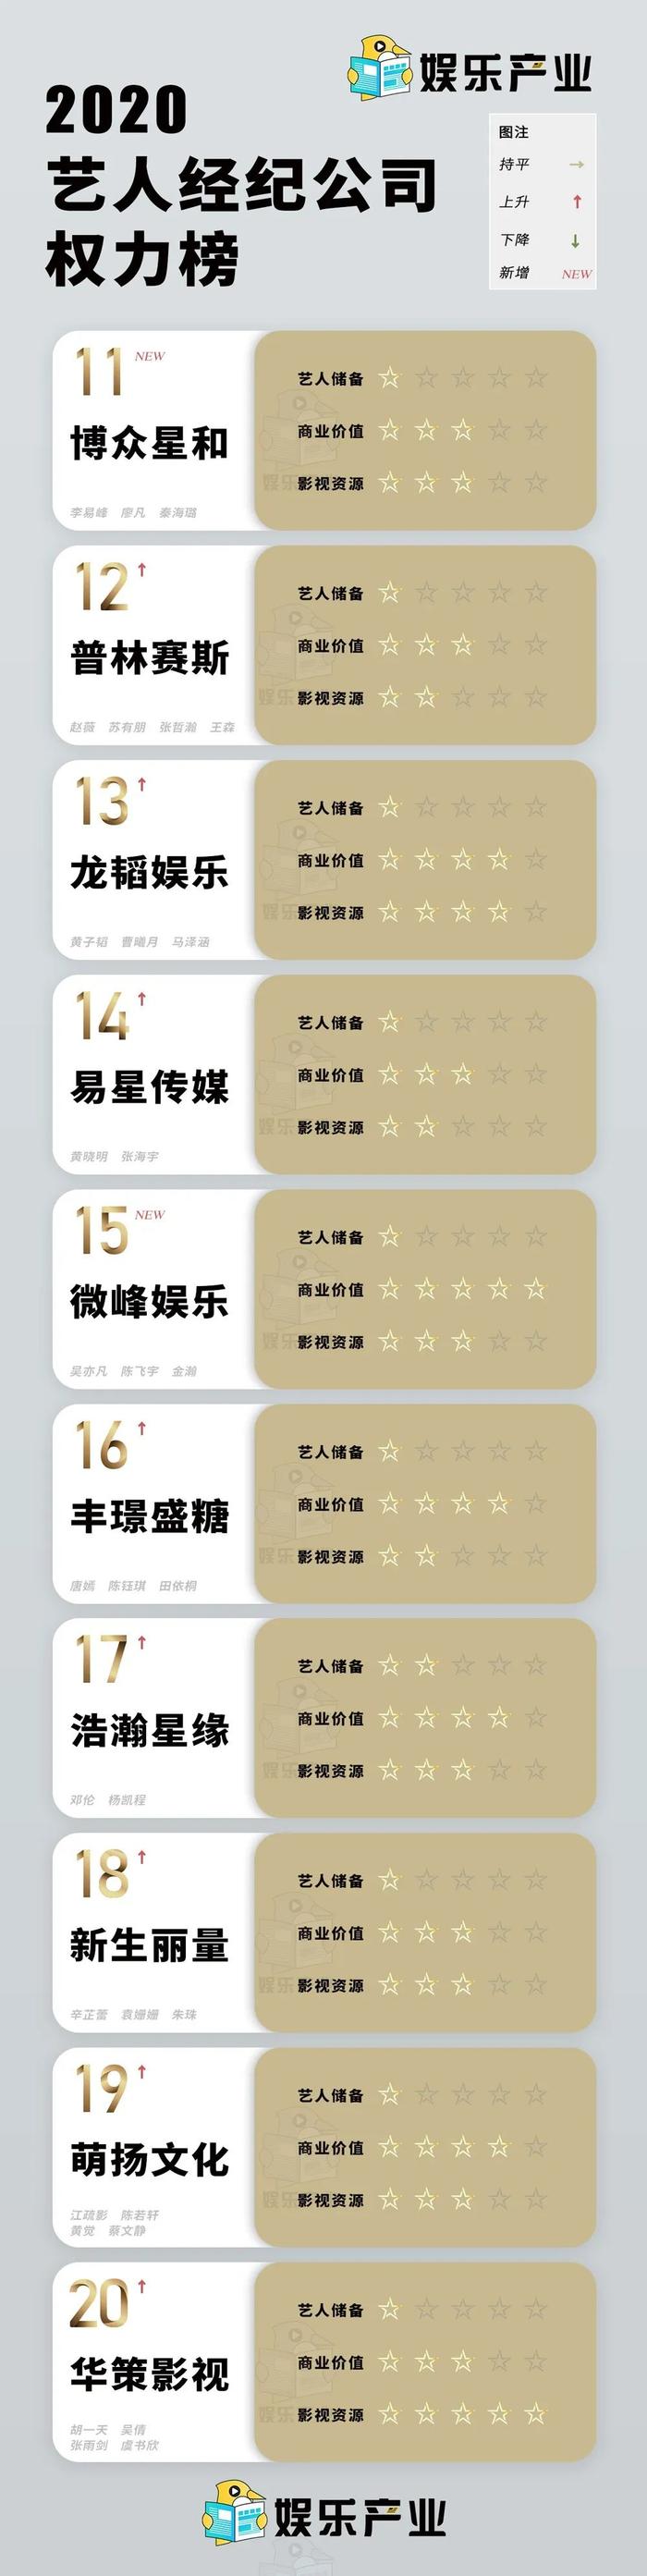 2019-2020艺人经纪公司权力榜TOP50：欢瑞悦凯排名飞升，合伙人制恐成常态